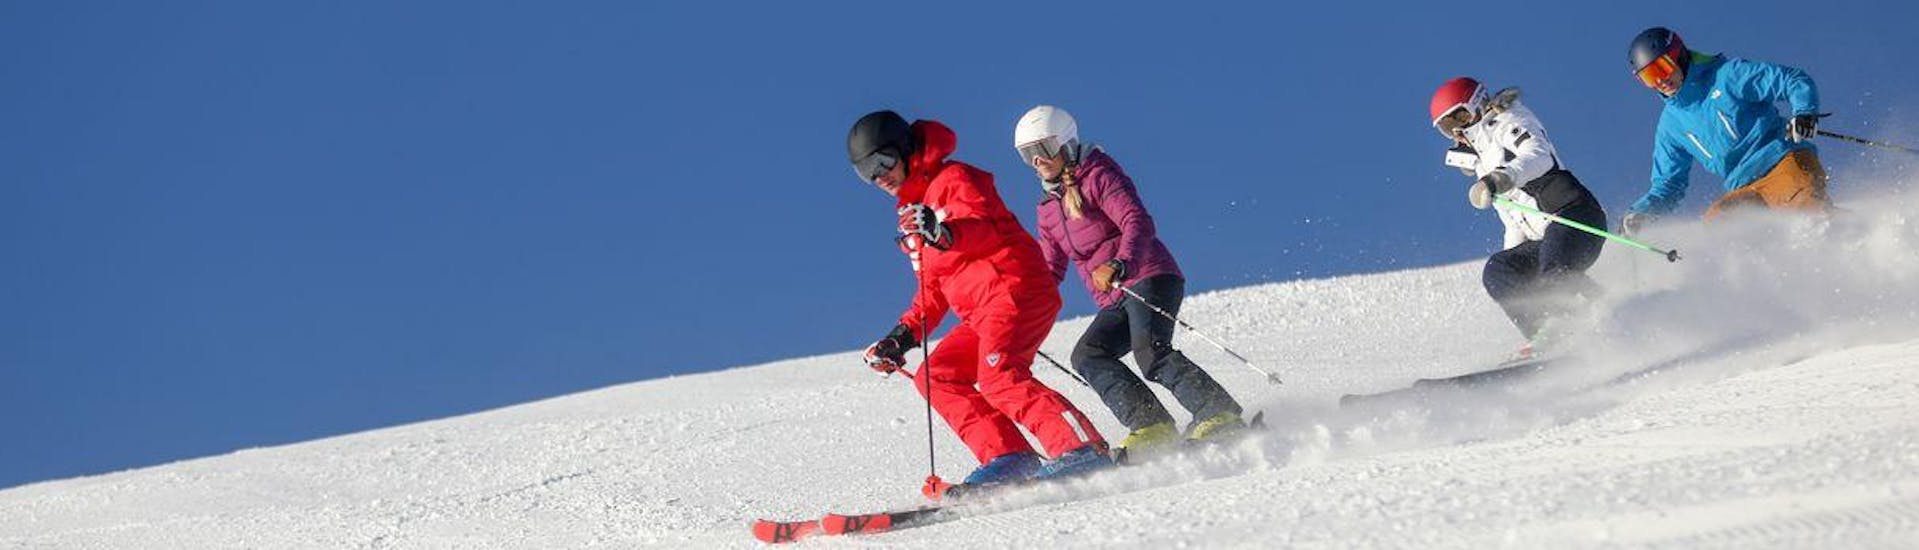 Skilessen voor volwassenen voor alle niveaus.